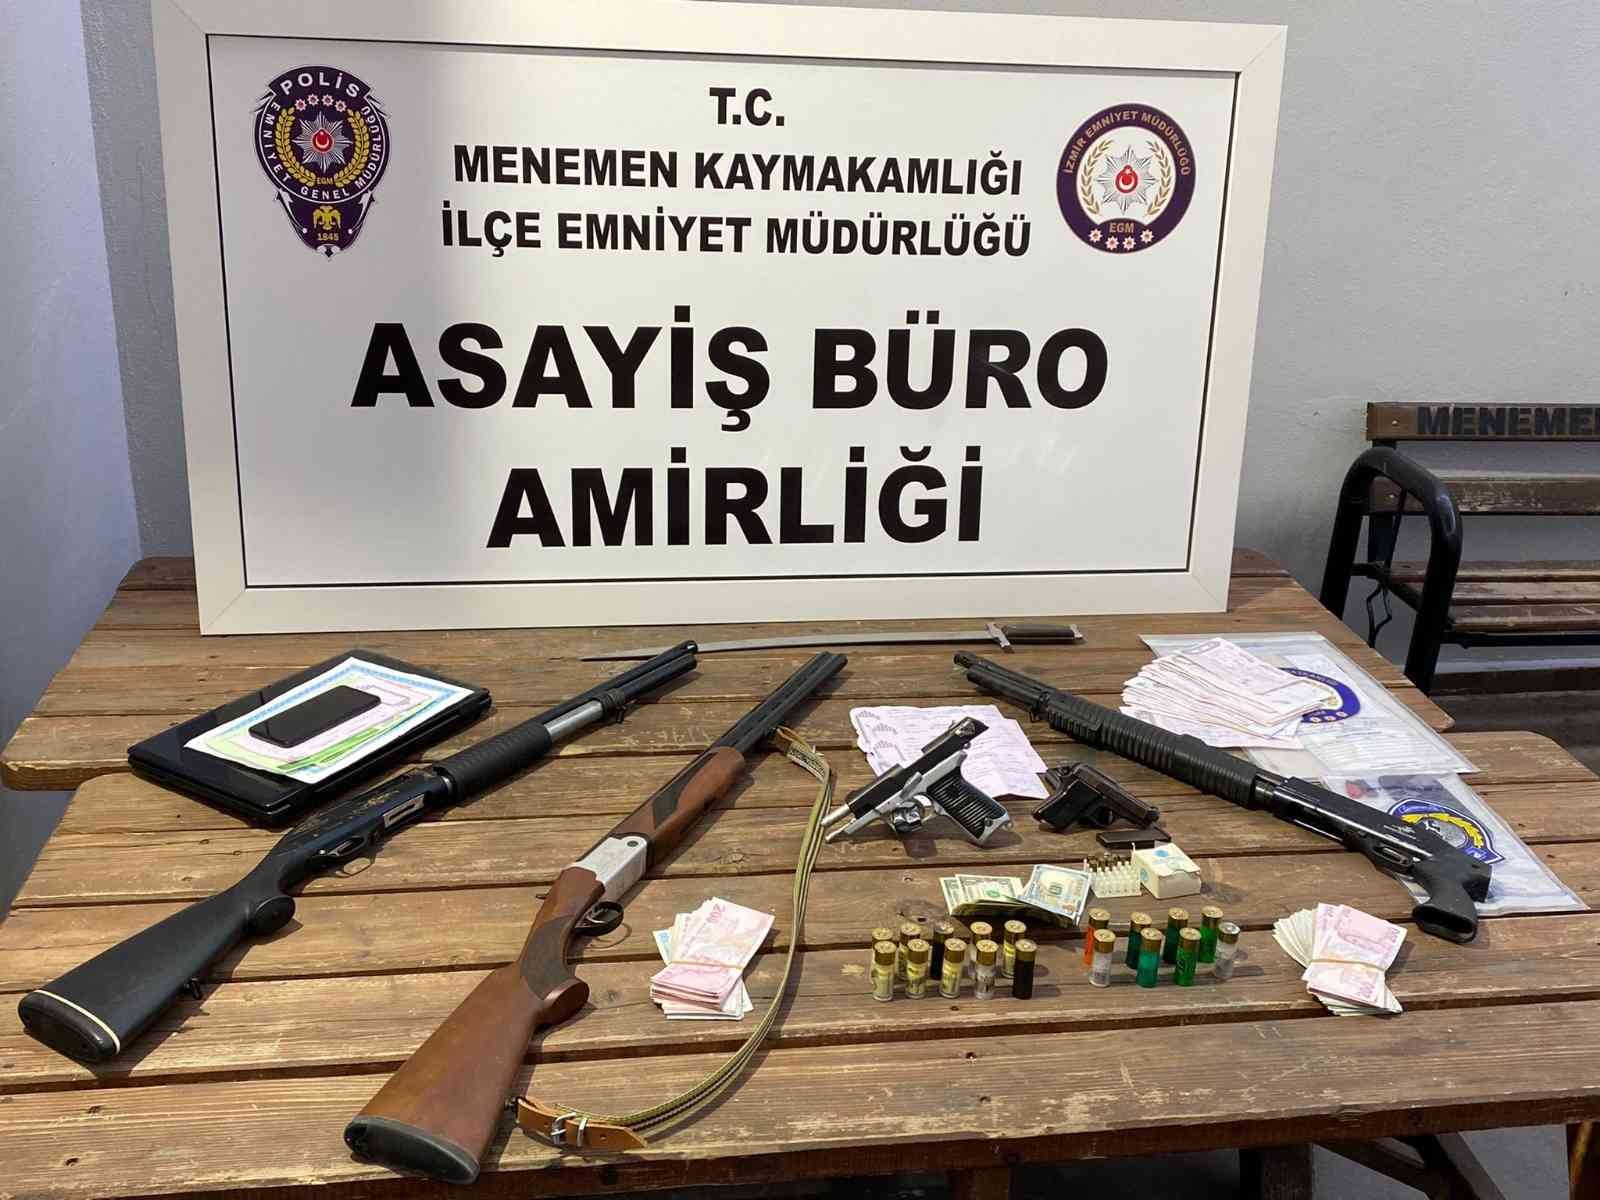 İzmir’de suç örgütüne yönelik eş zamanlı operasyon: 4 gözaltı #izmir